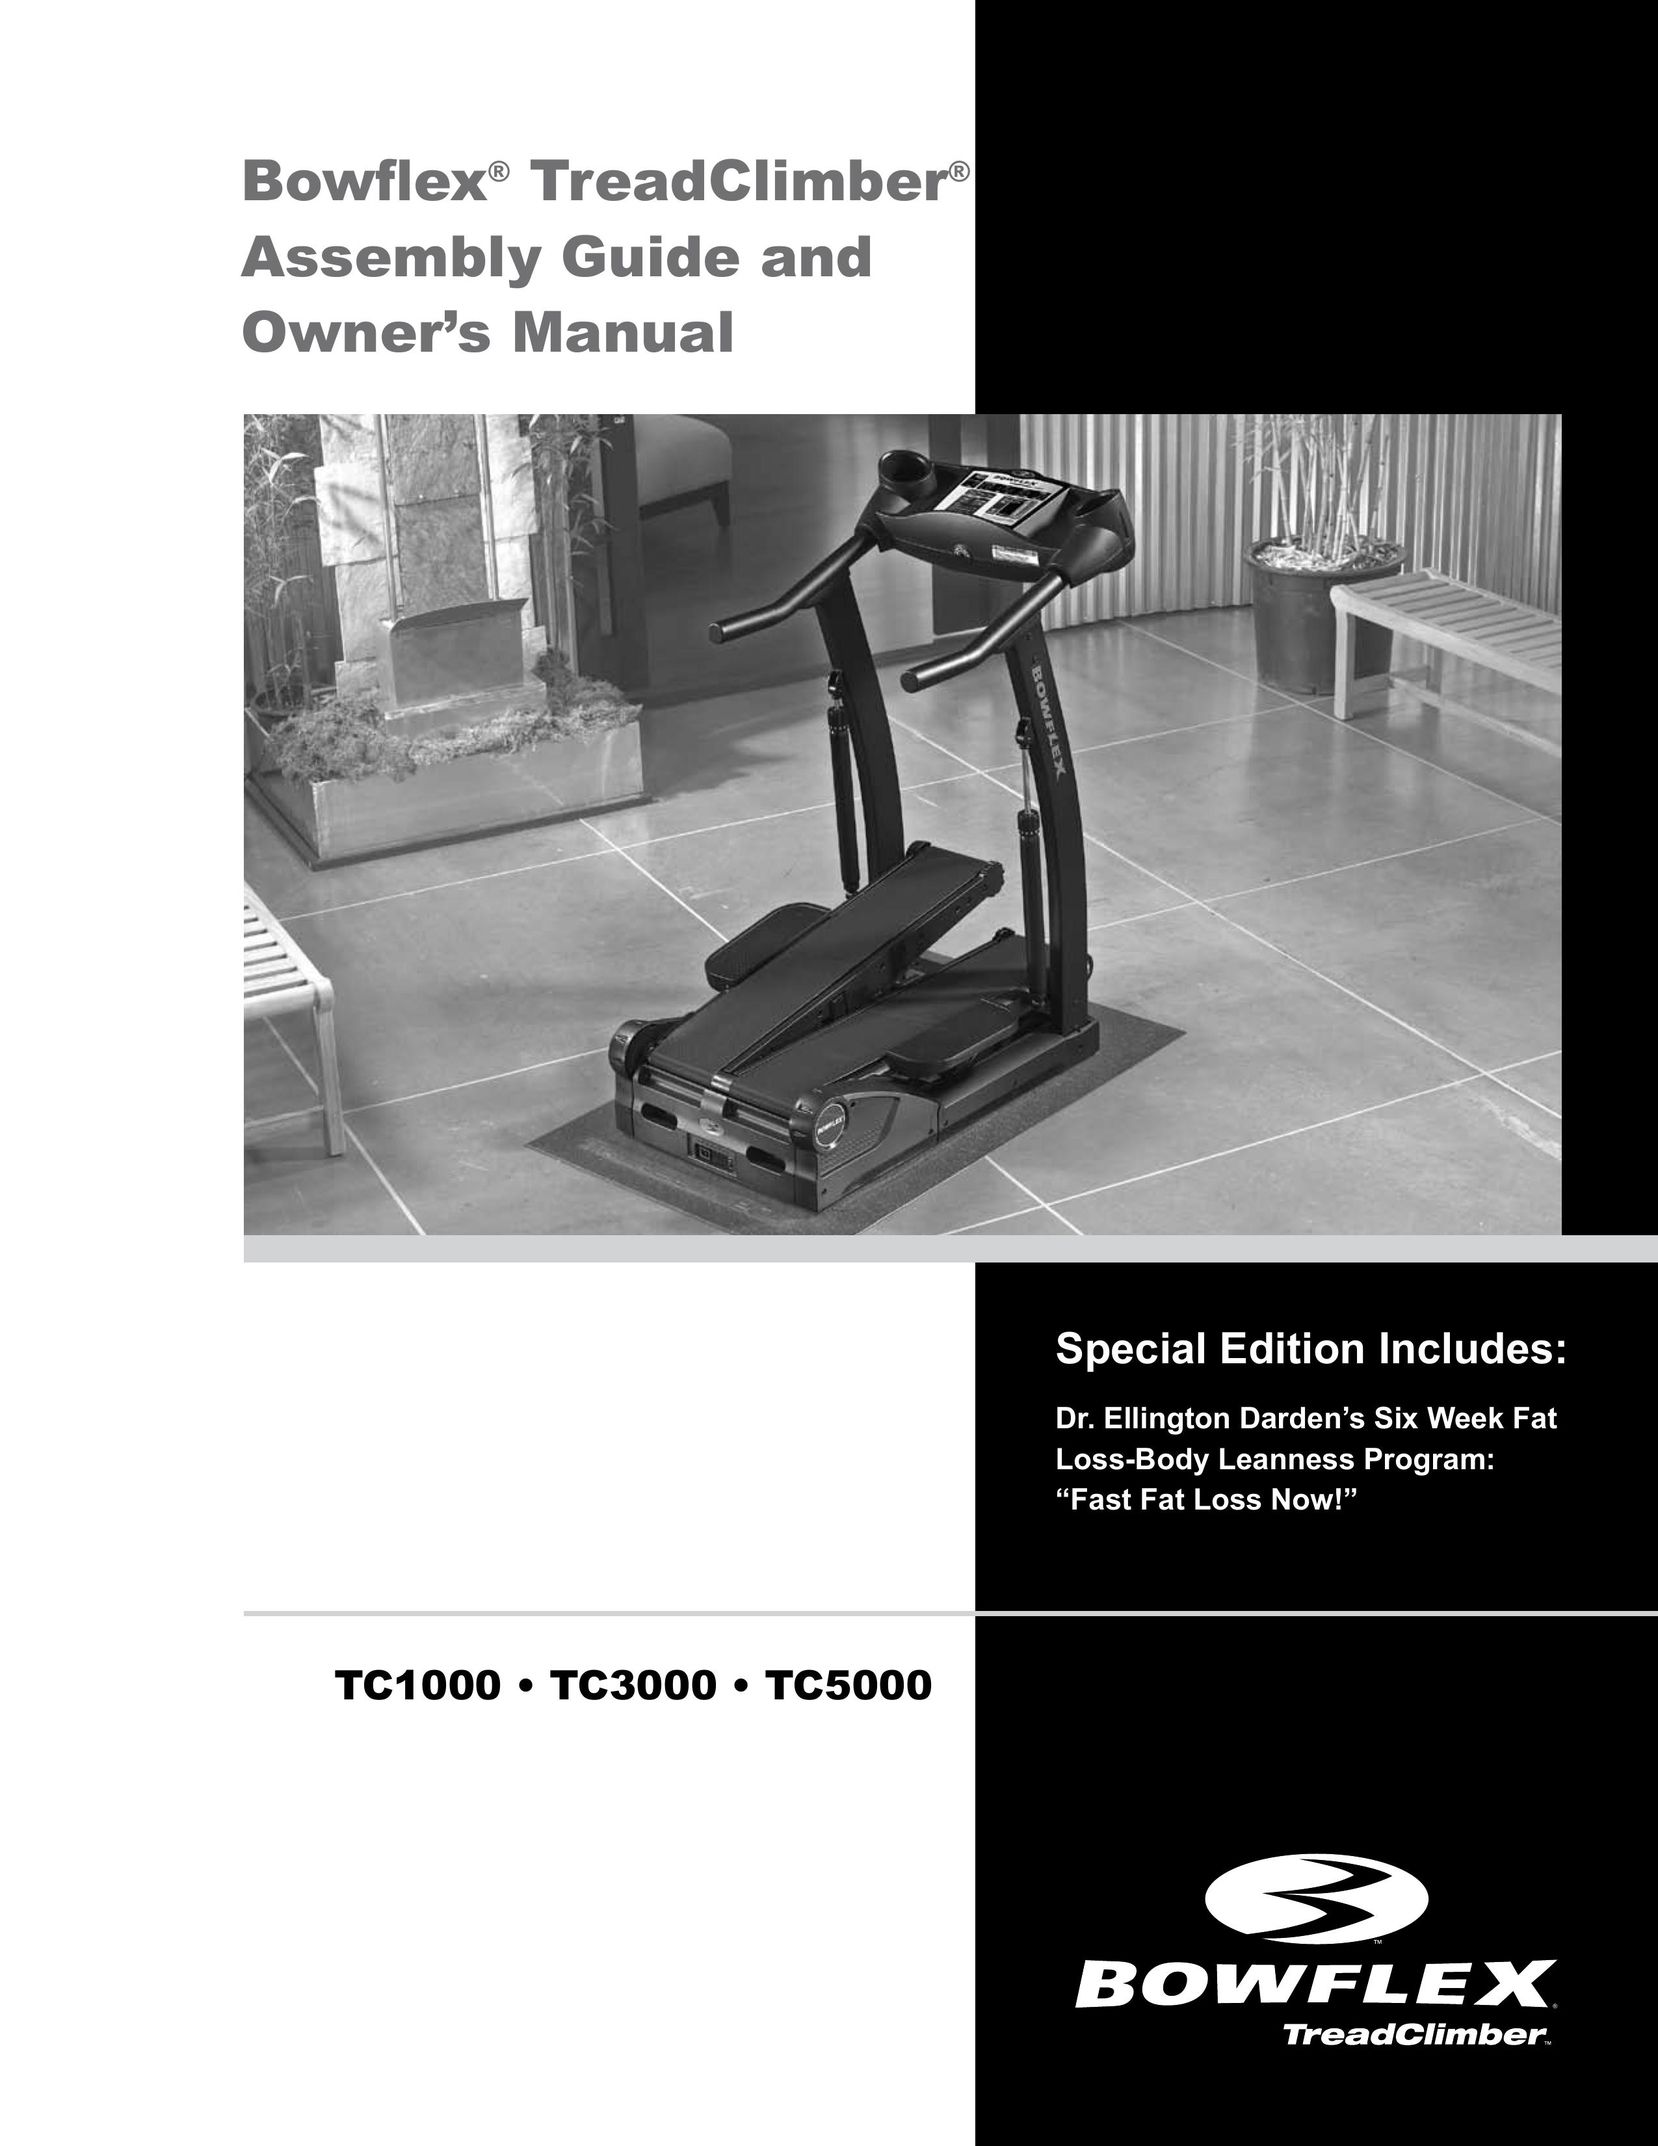 Bowflex TC3000 Home Gym User Manual